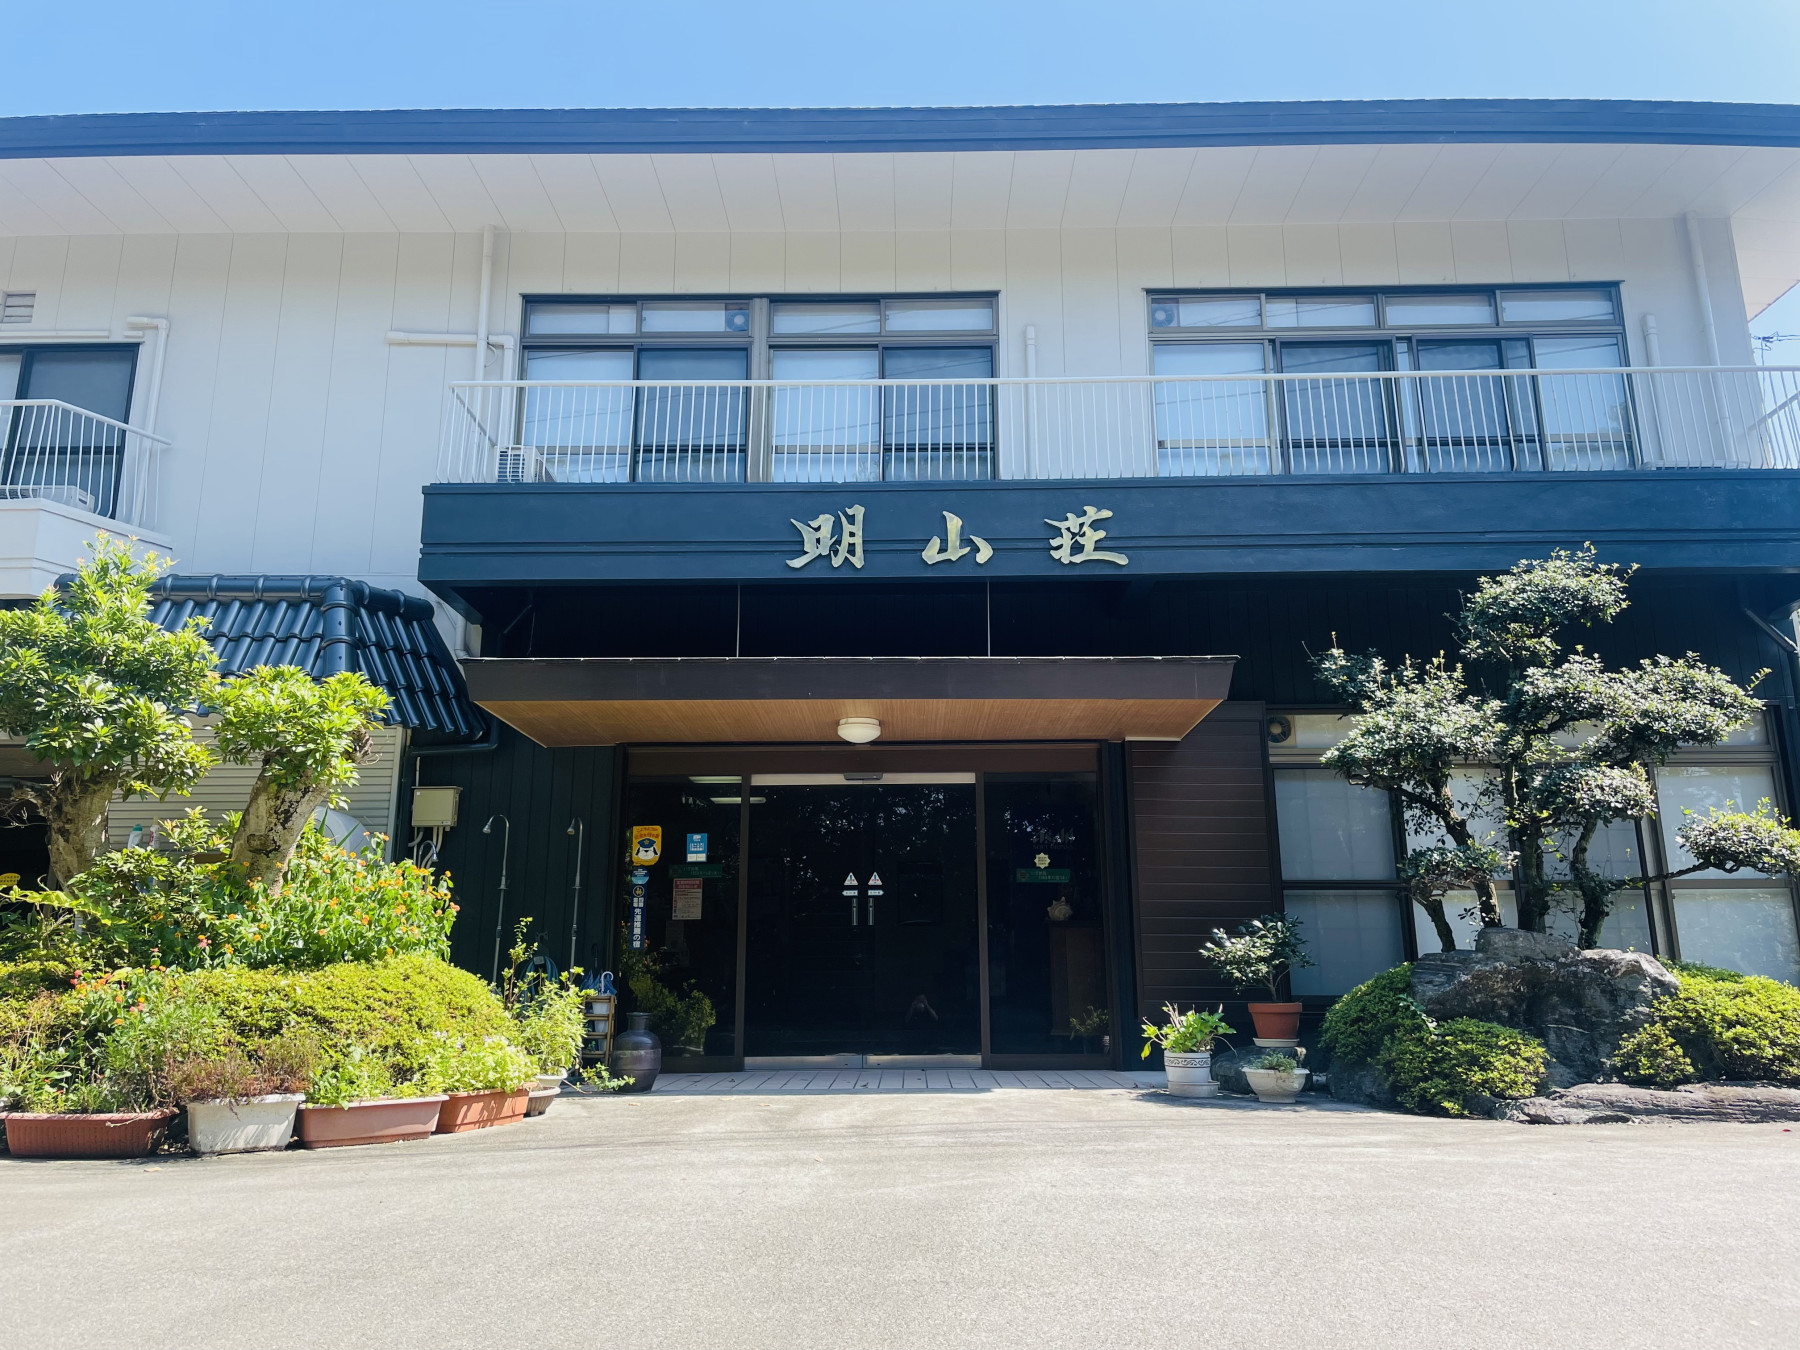 【夏休み】田井ノ浜海水浴場近辺でファミリー向けのホテル